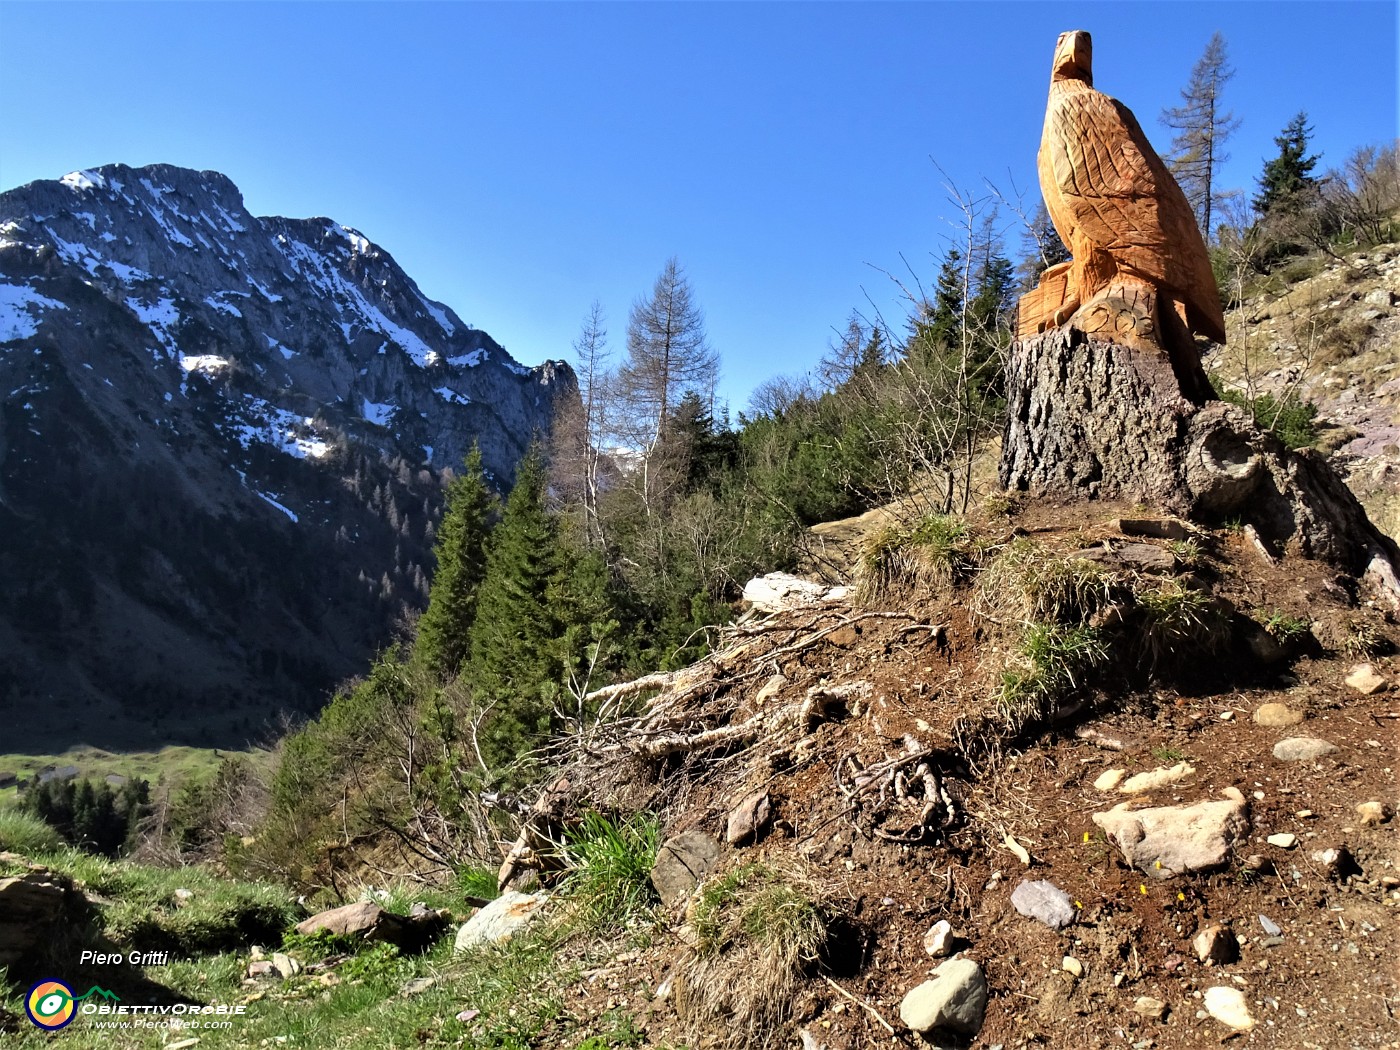 15 Aquila reale scolpita in tronco d'abete con vista in Corno Branchino.JPG